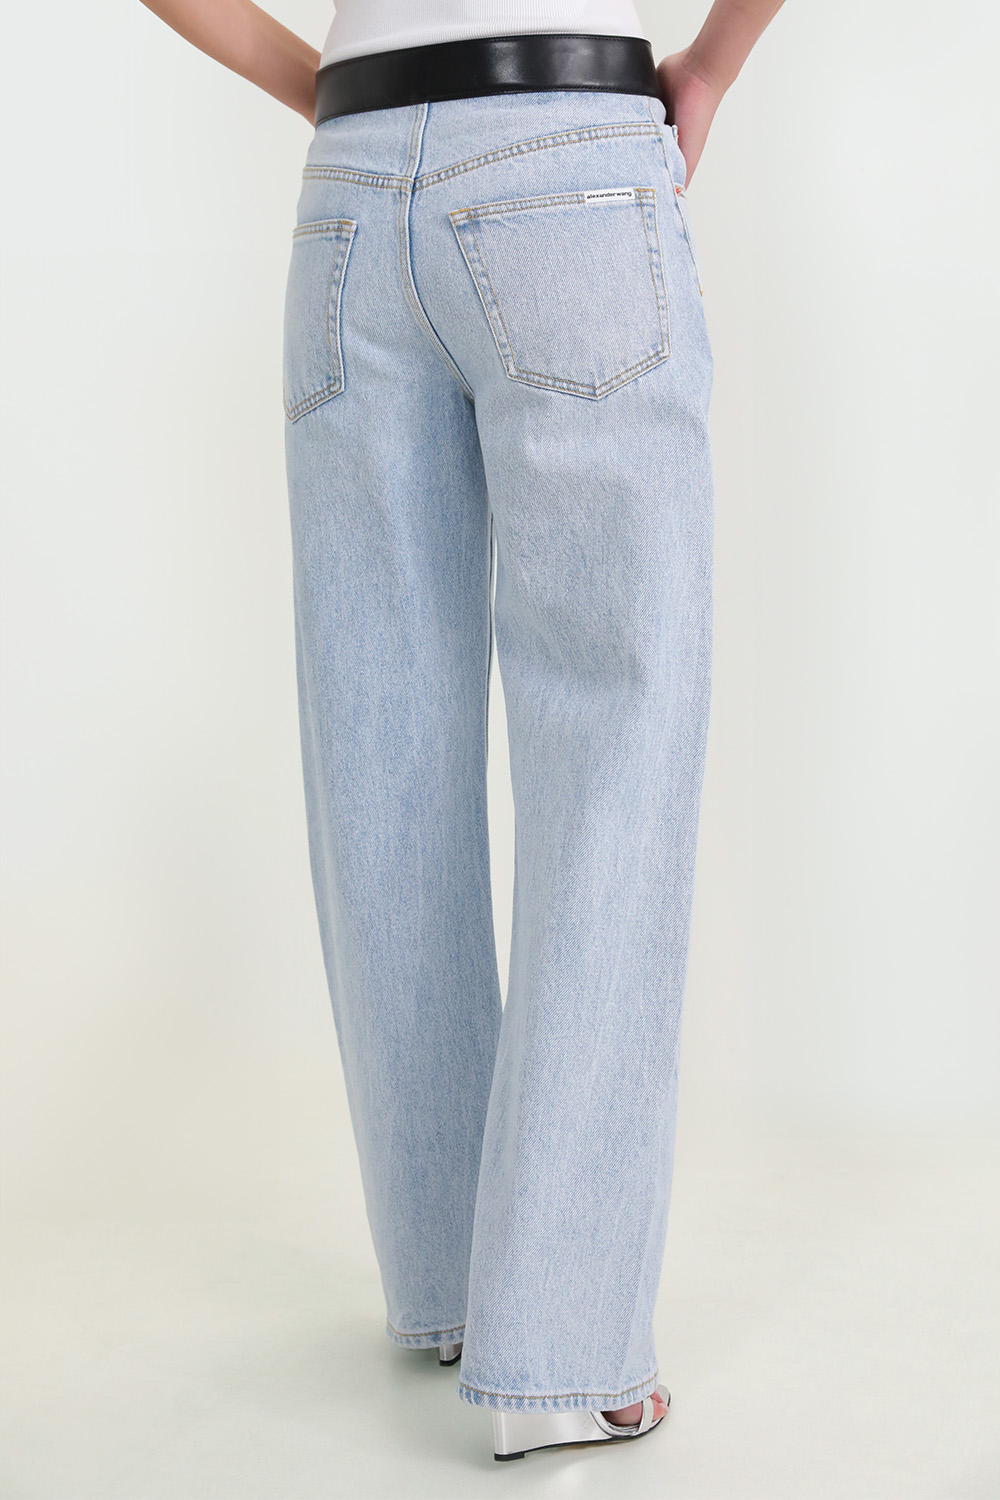 מכנסי ג'ינס עם חגורת עור ALEXANDER WANG